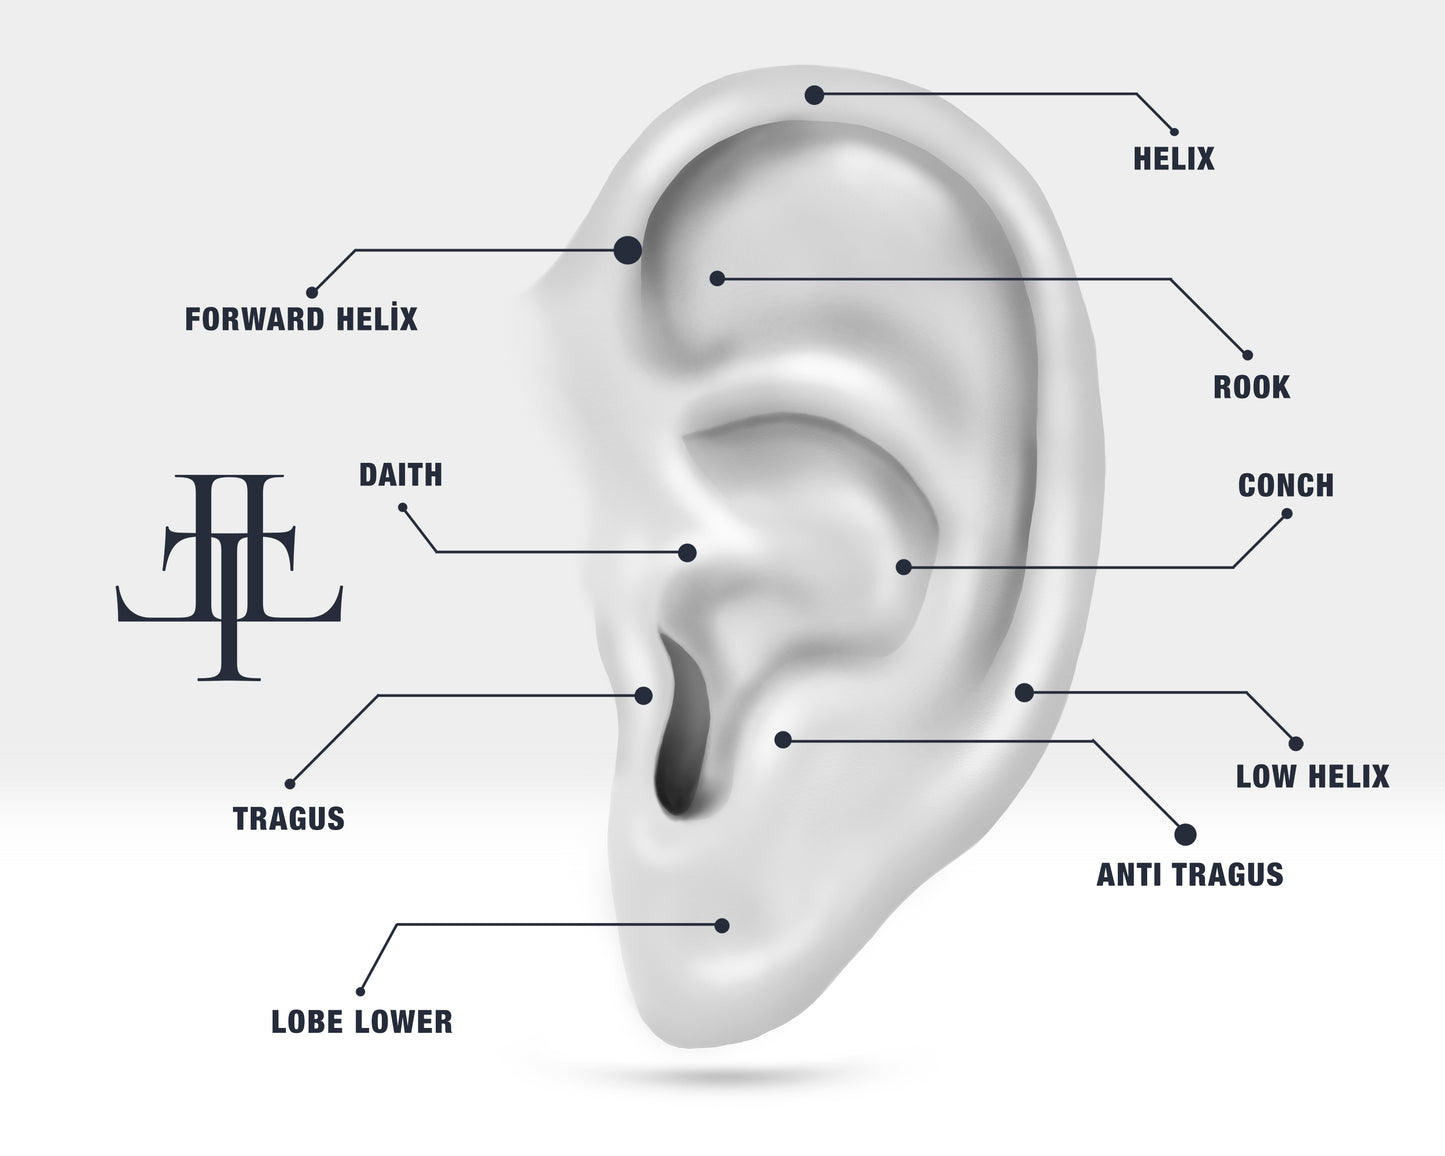 Hoop Earring with Diamond in 14k Solid Gold Large-Medium-Small Diamond Huggies Earrings Earlobe Hoop Earring | LE00037D